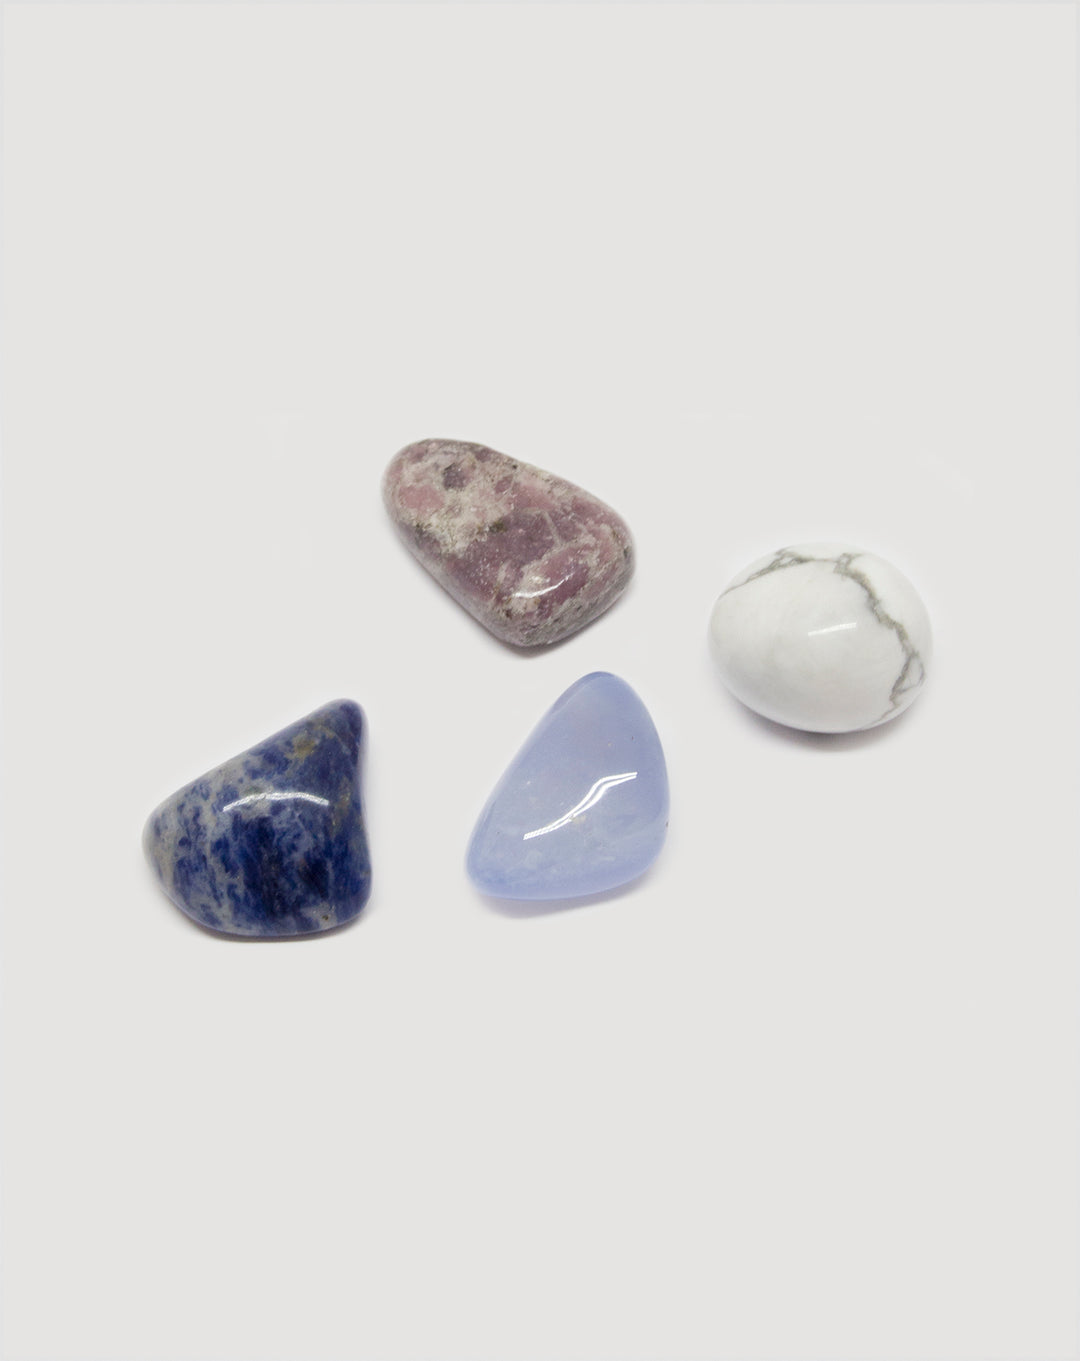 boutique kit pierres naturelles cristaux lithothérapie anti stress healing crystals lithothérapy  howlite sodalite calcédoine bleue lépidolite